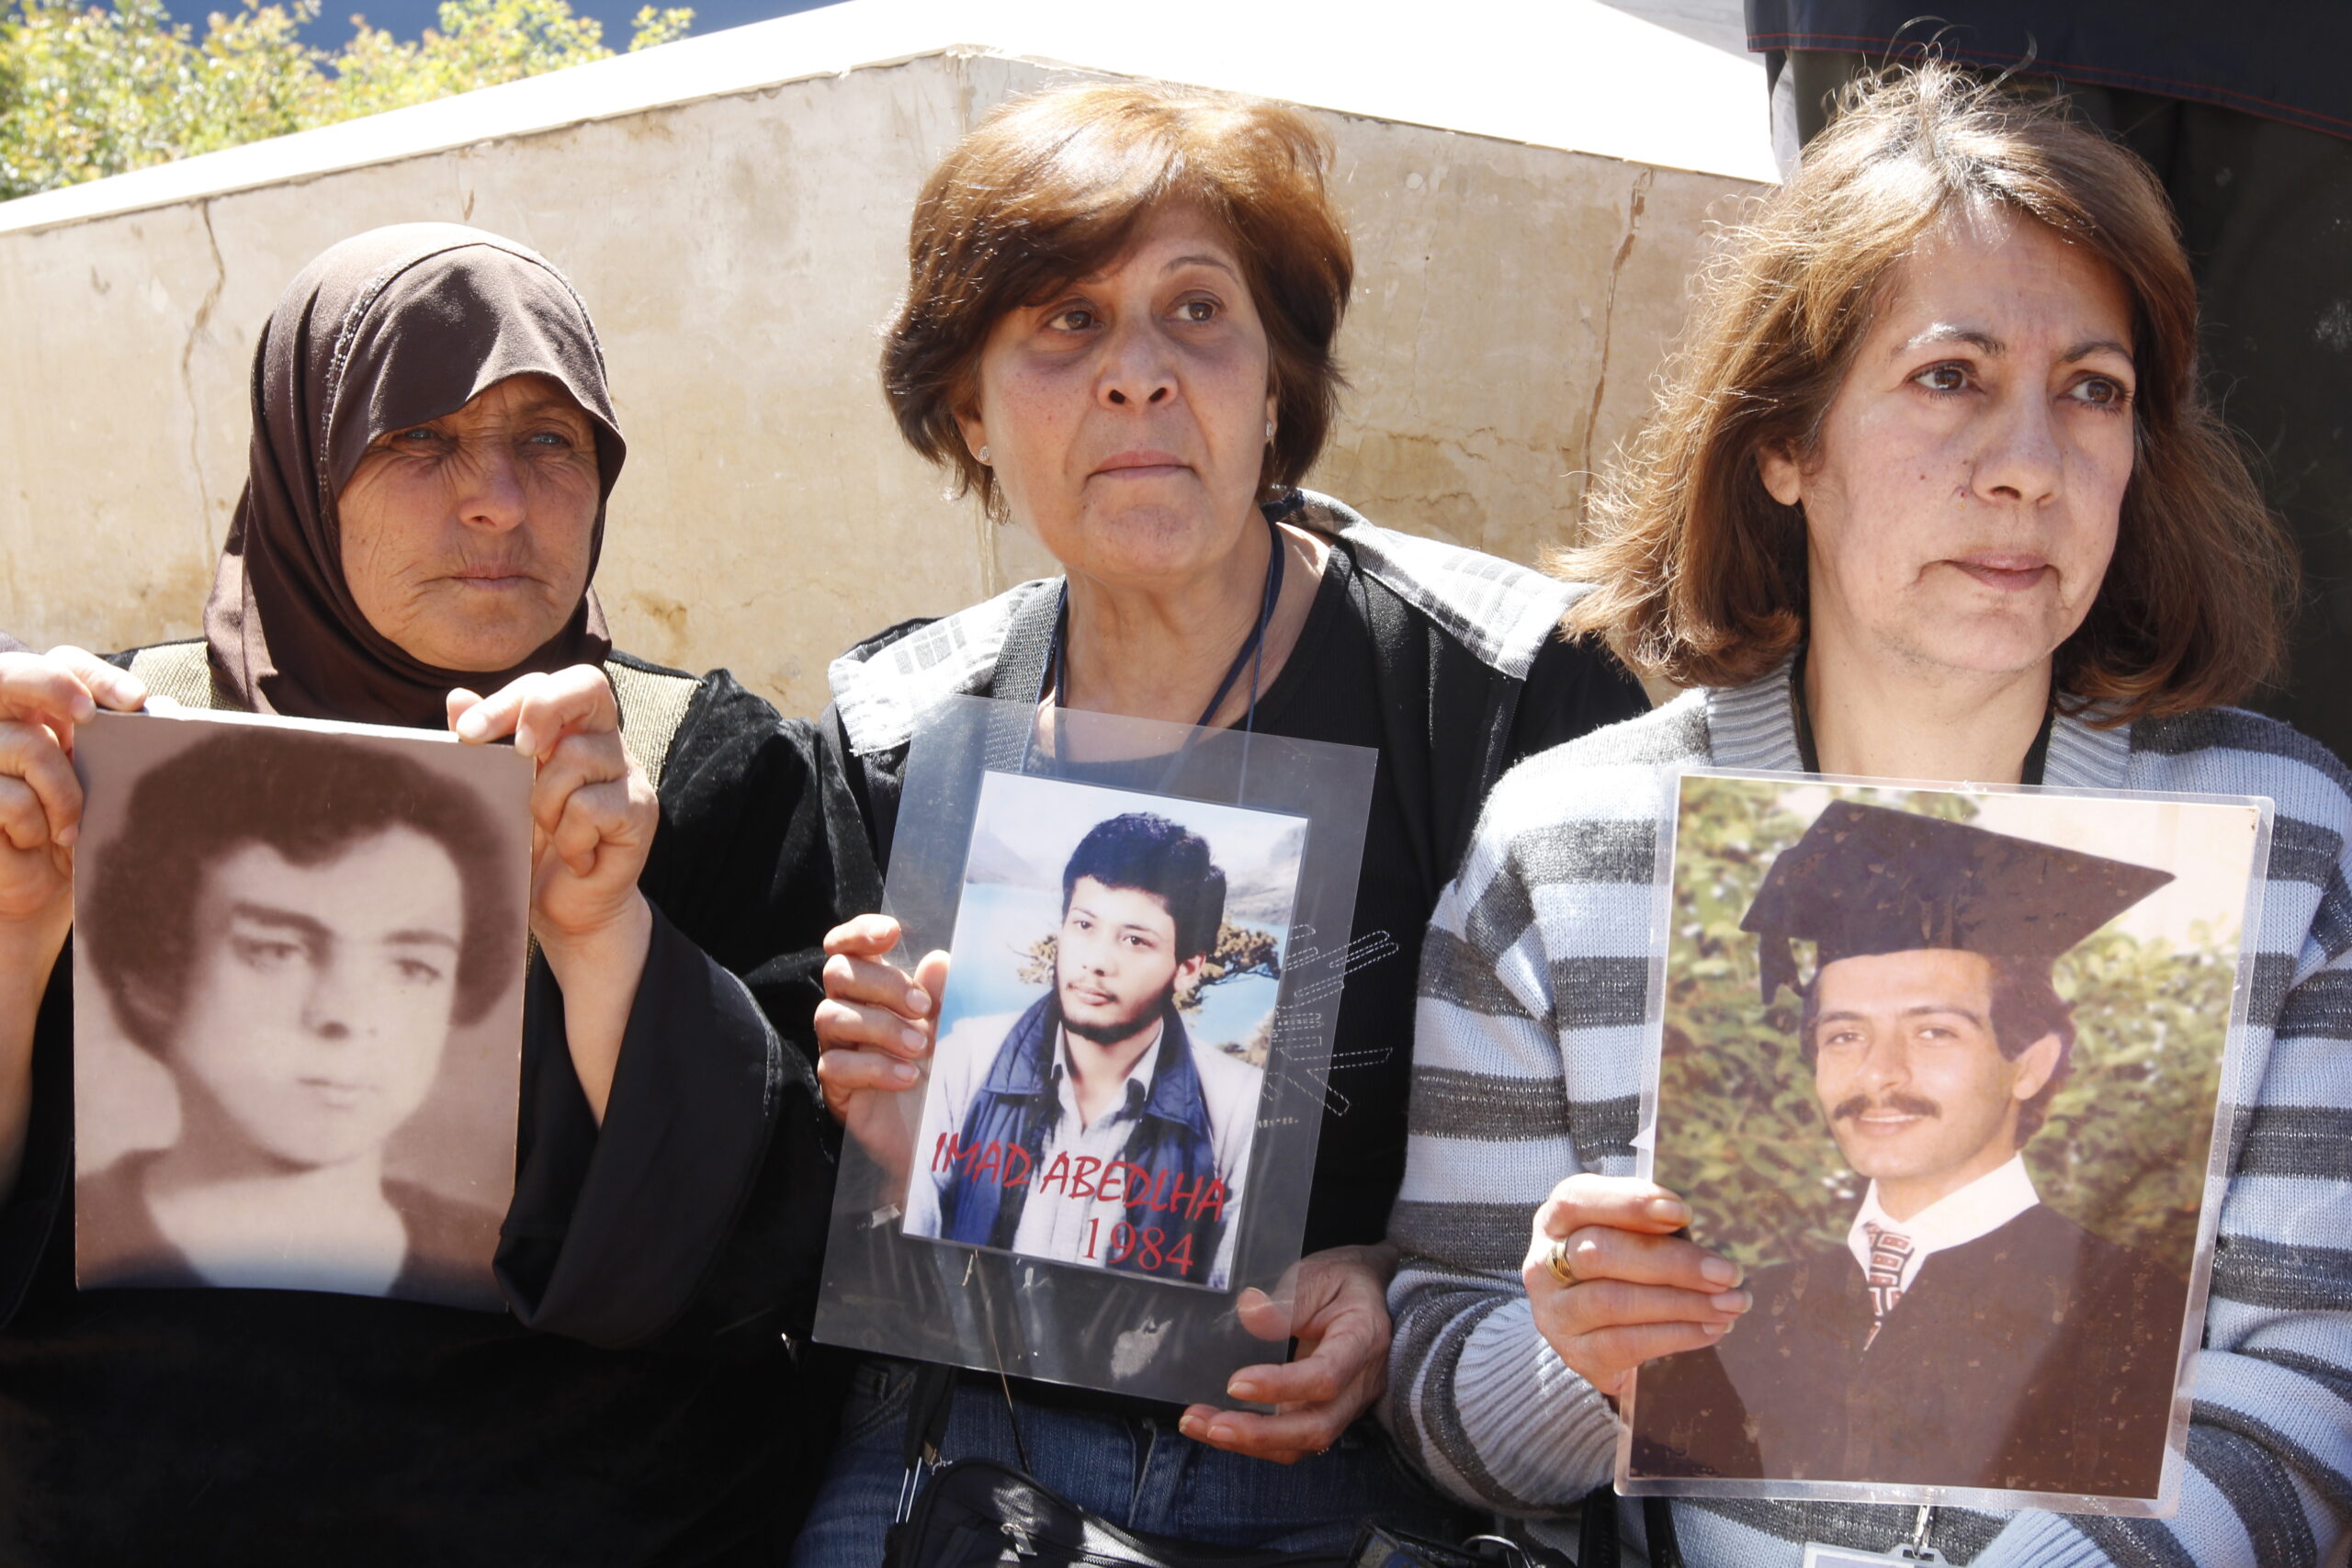 اقتراح قانون المفقودين والمخفيين قسرا أمام لجنة الإدارة والعدل، وبيان للجنة أهالي المخطوفين والمفقودين في لبنان